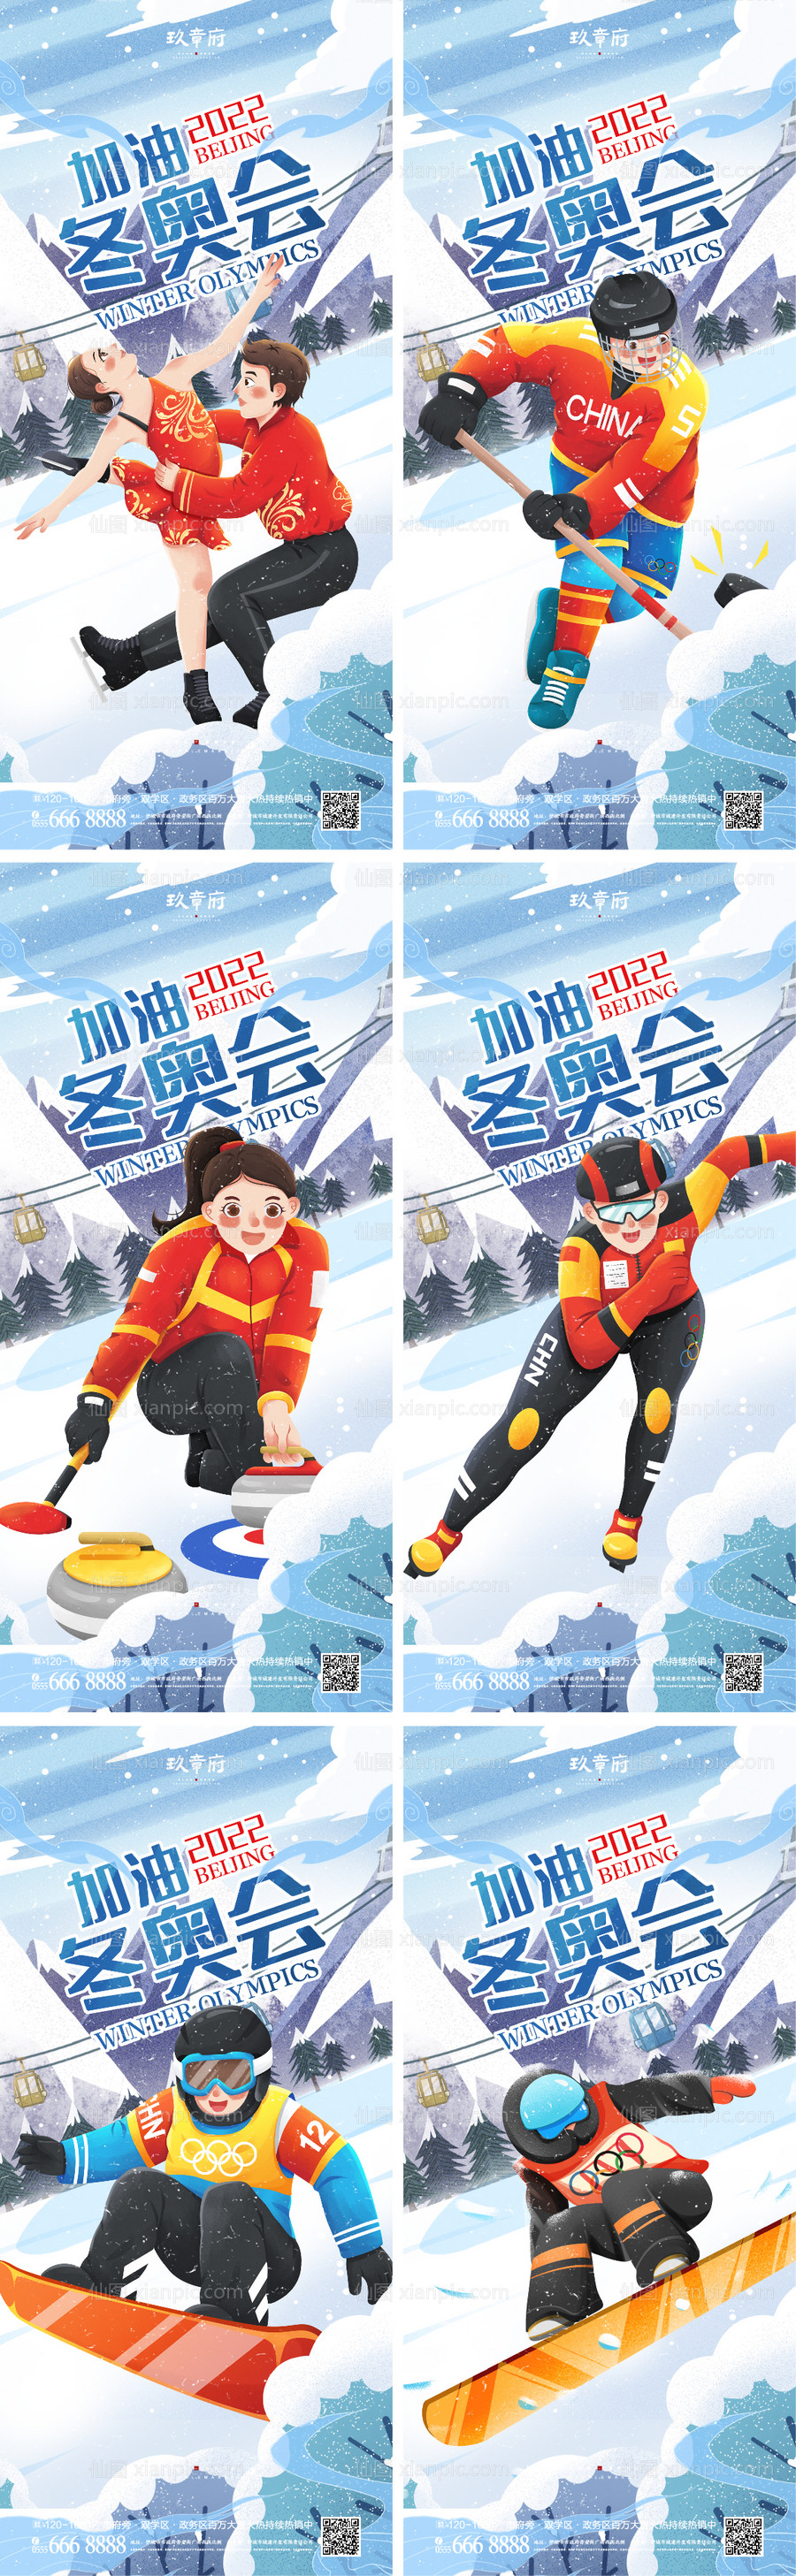 素材乐-北京冬奥会助威加油系列海报